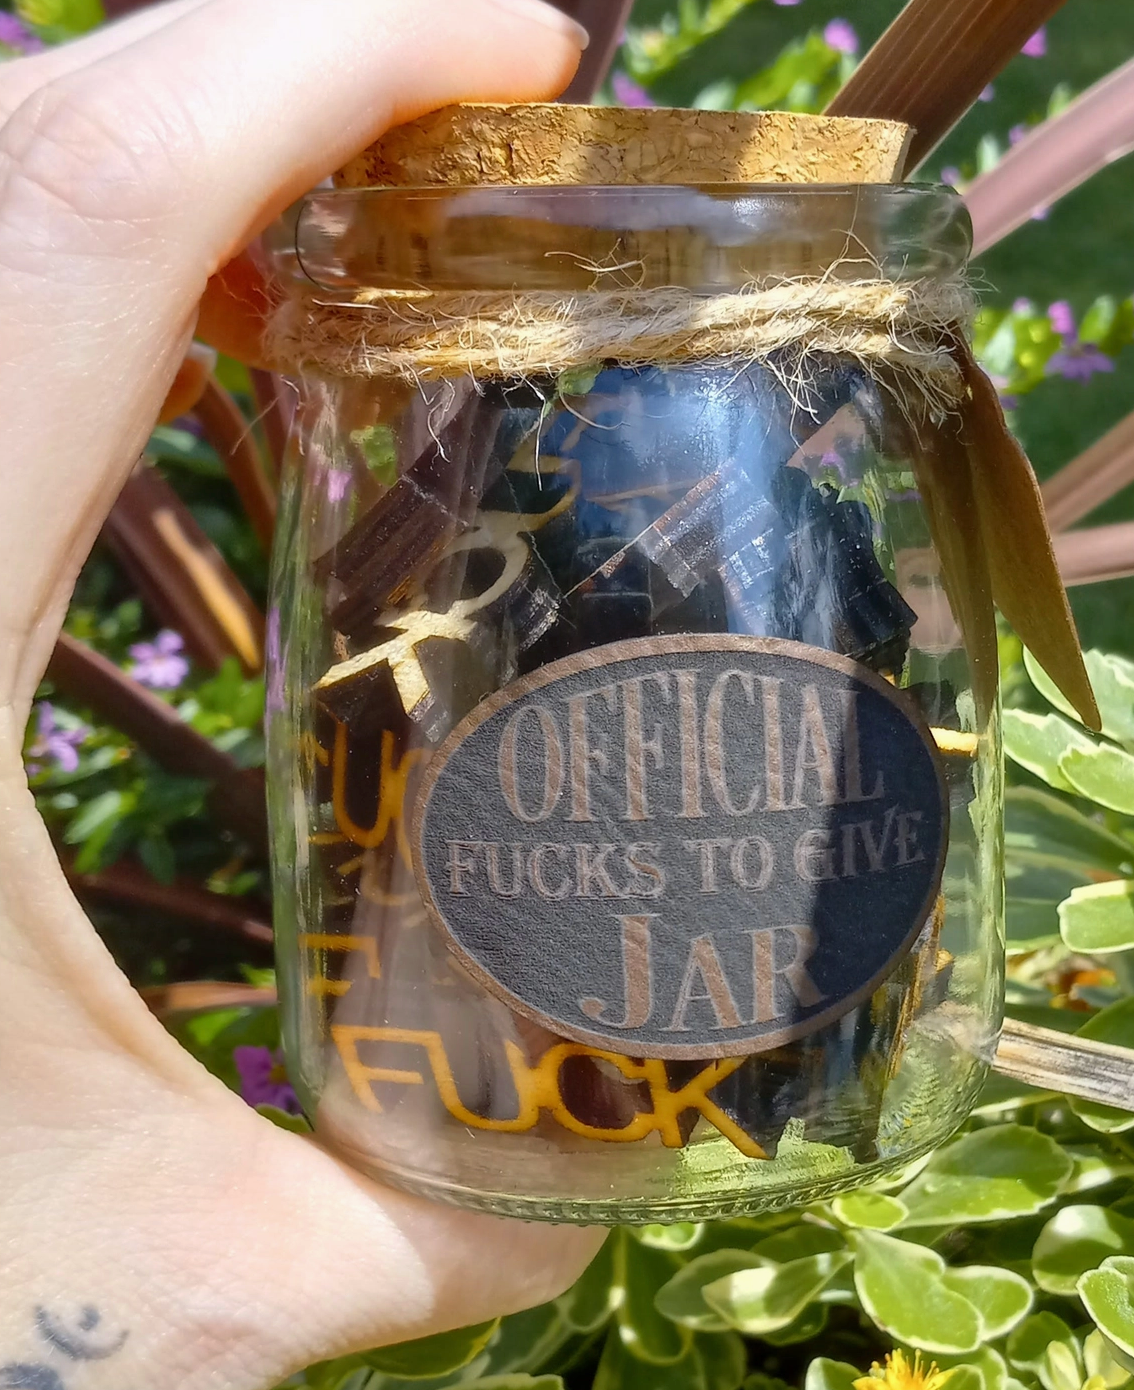 Official Fucks To Give Jar - 30 Fucks Per Jar